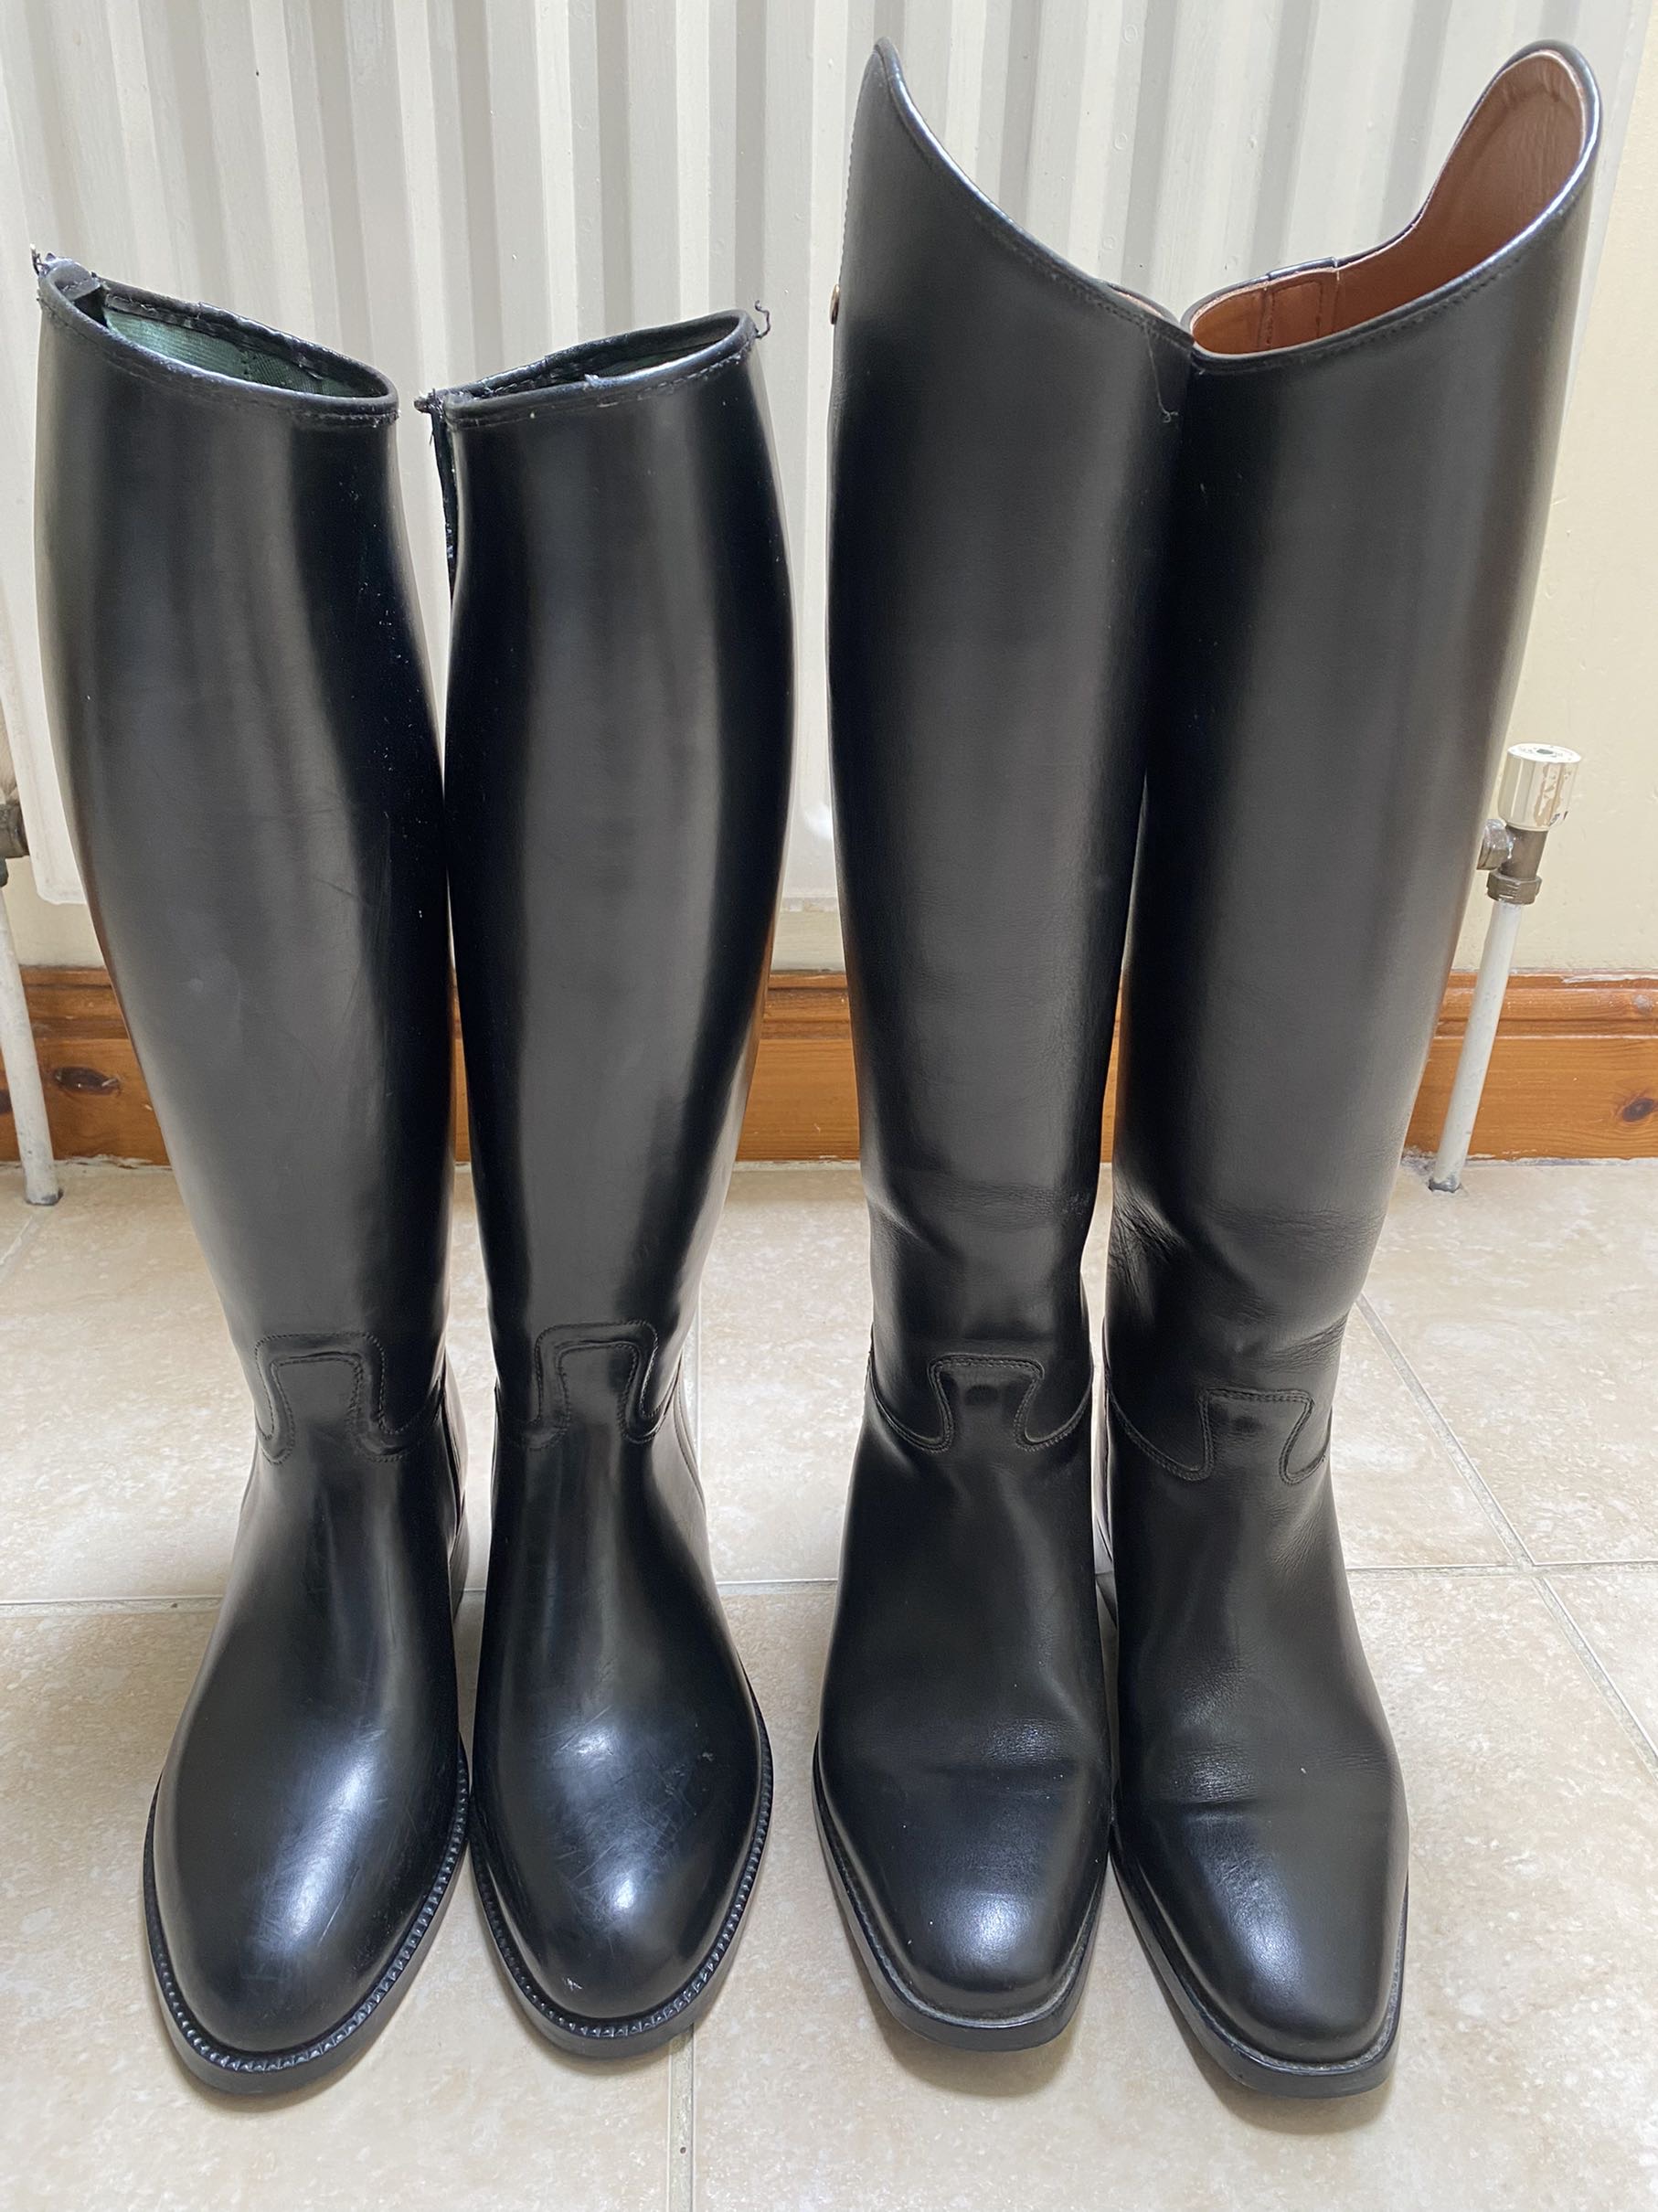 Rubber or Leather boots ?? 27258-rubber-or-leather-boots---.jpg